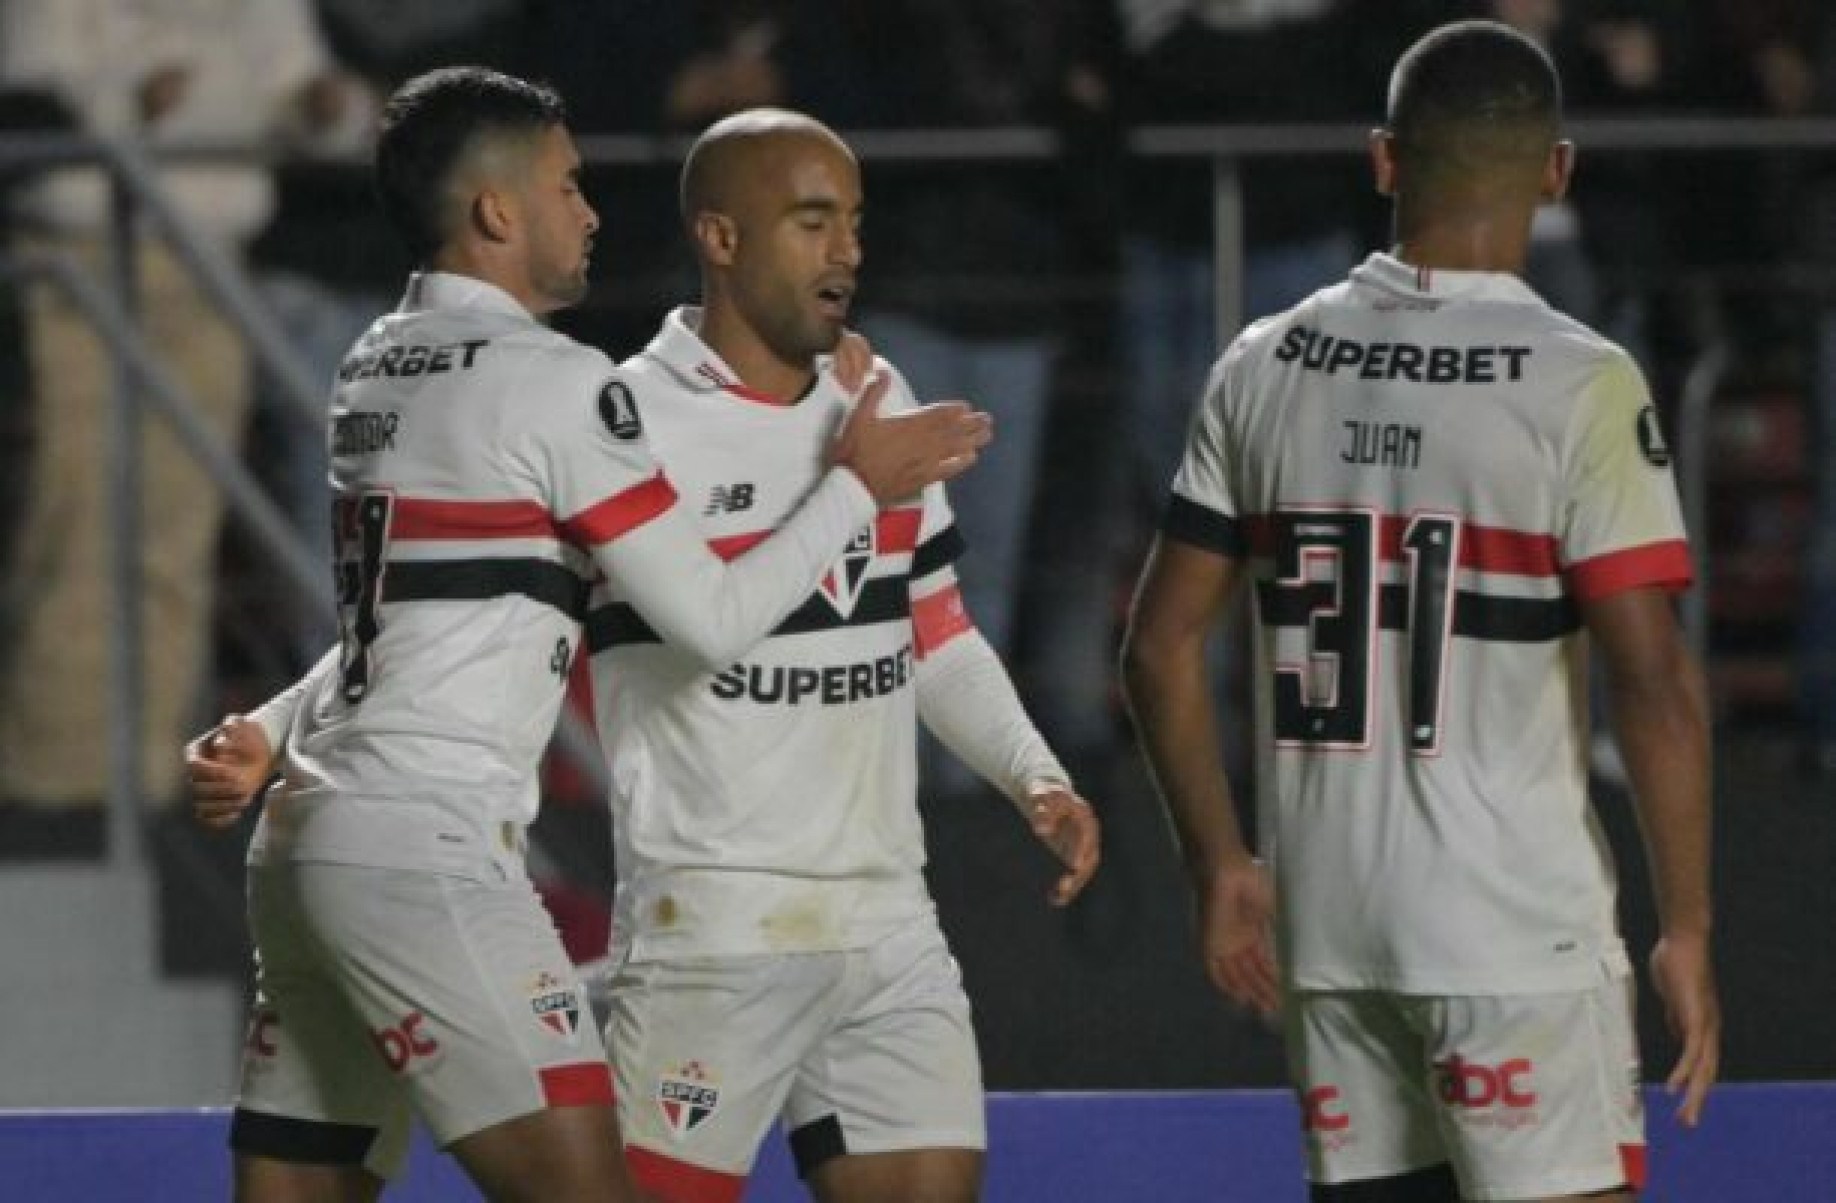 Libertadores: São Paulo tem vitória histórica e termina em 1º no seu grupo